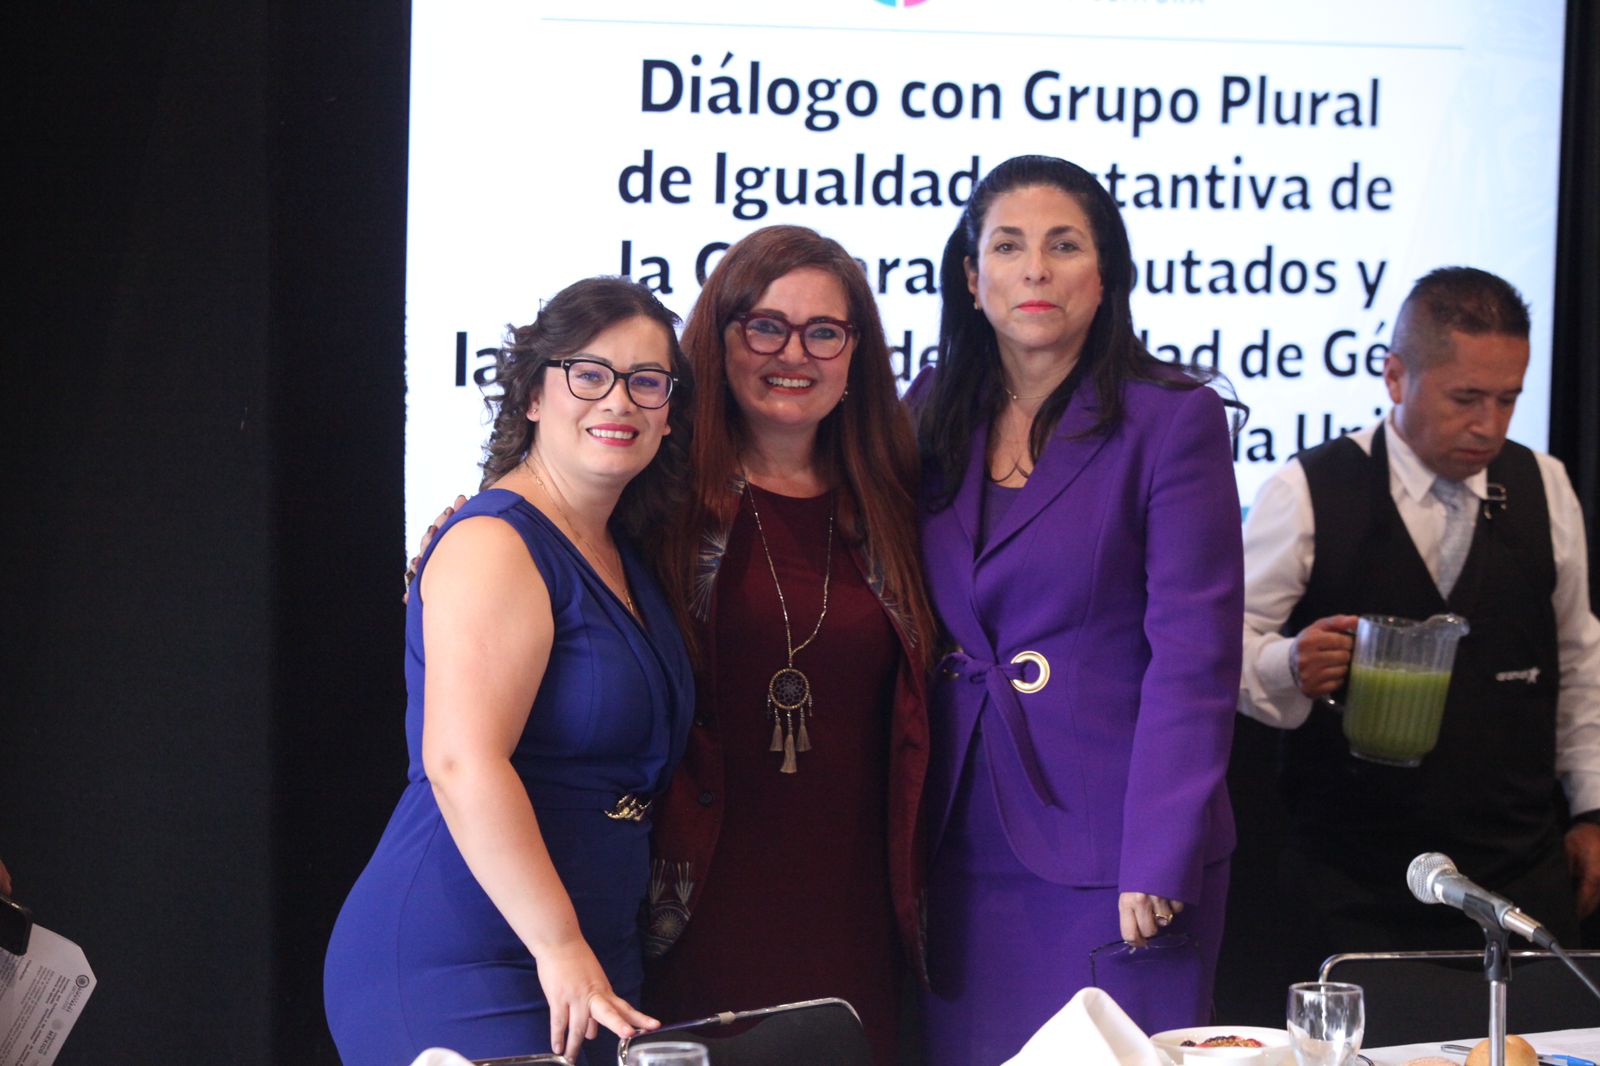 Julieta Vences en el marco del Diálogo con el Grupo Plural de Igualdad Sustantiva de la Cámara de Diputados